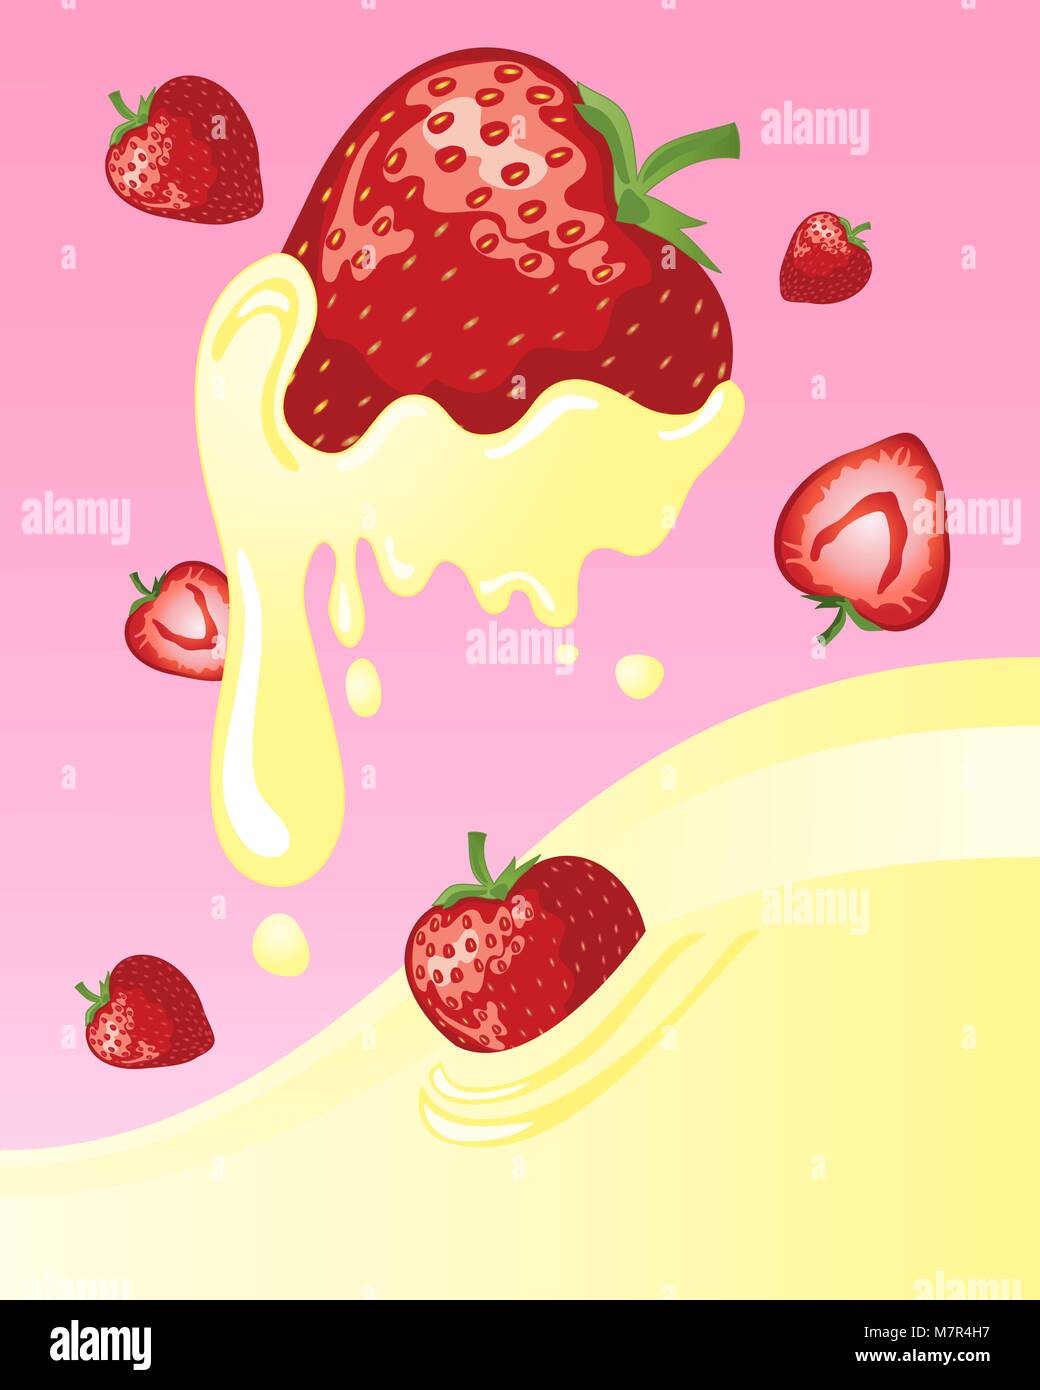 Un vecteur illustration en format eps 10 de frais jardin des fraises dans une mer de lait crème sur un fond rose Illustration de Vecteur